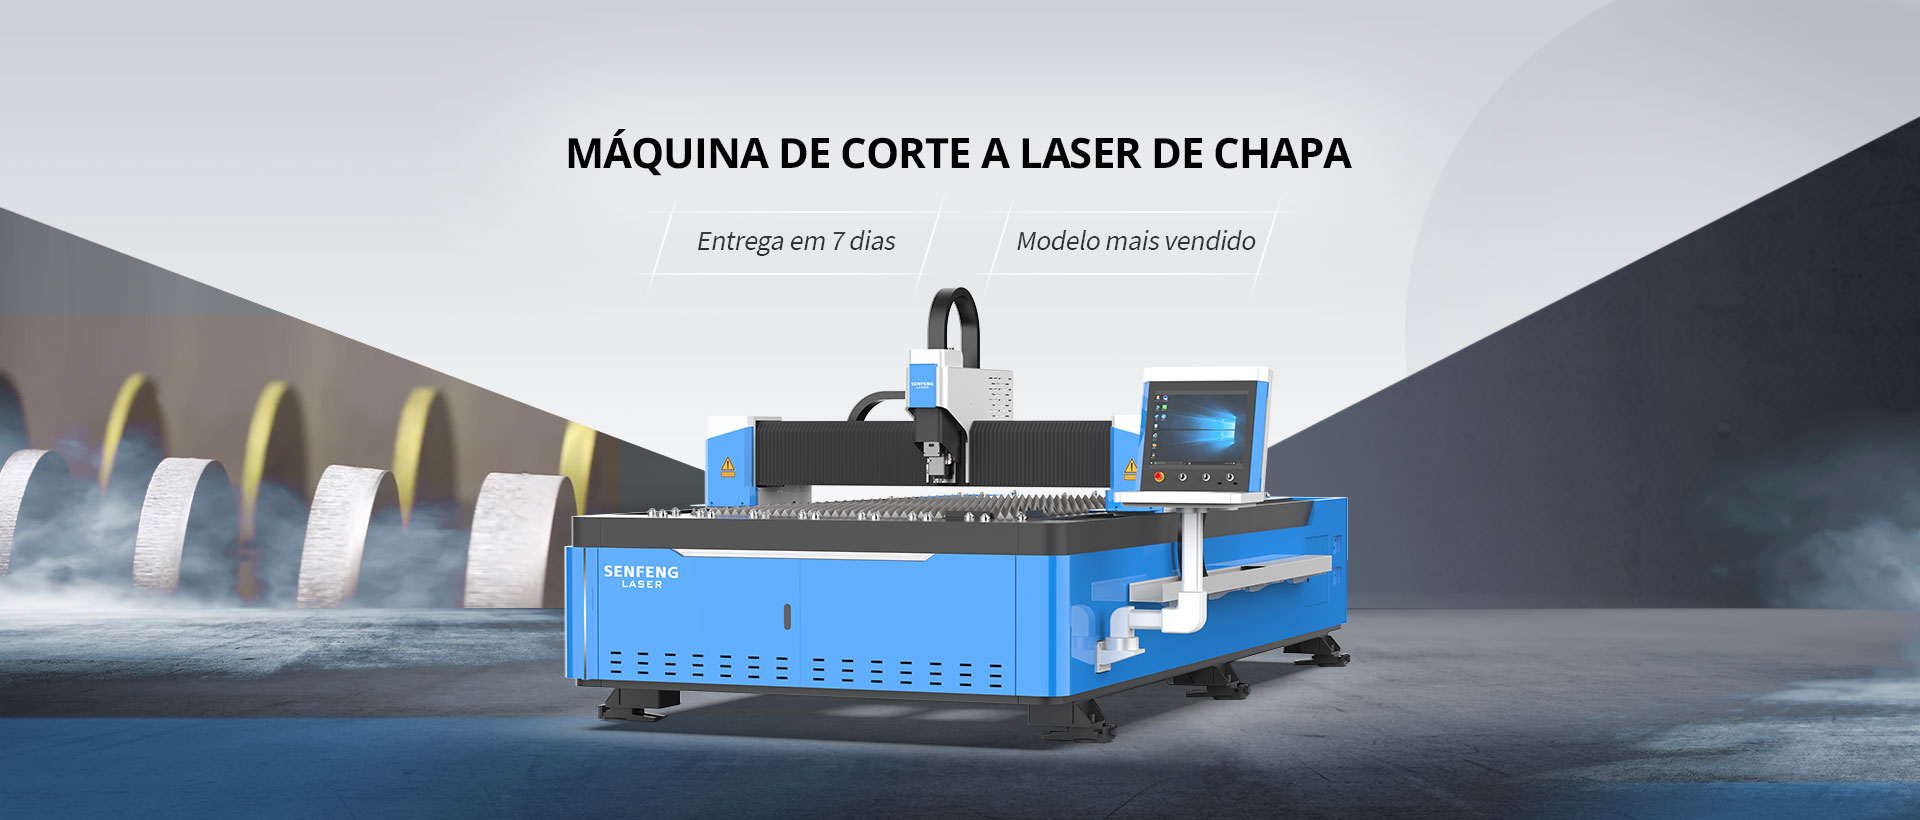 Máquina de corte a laser de chapa